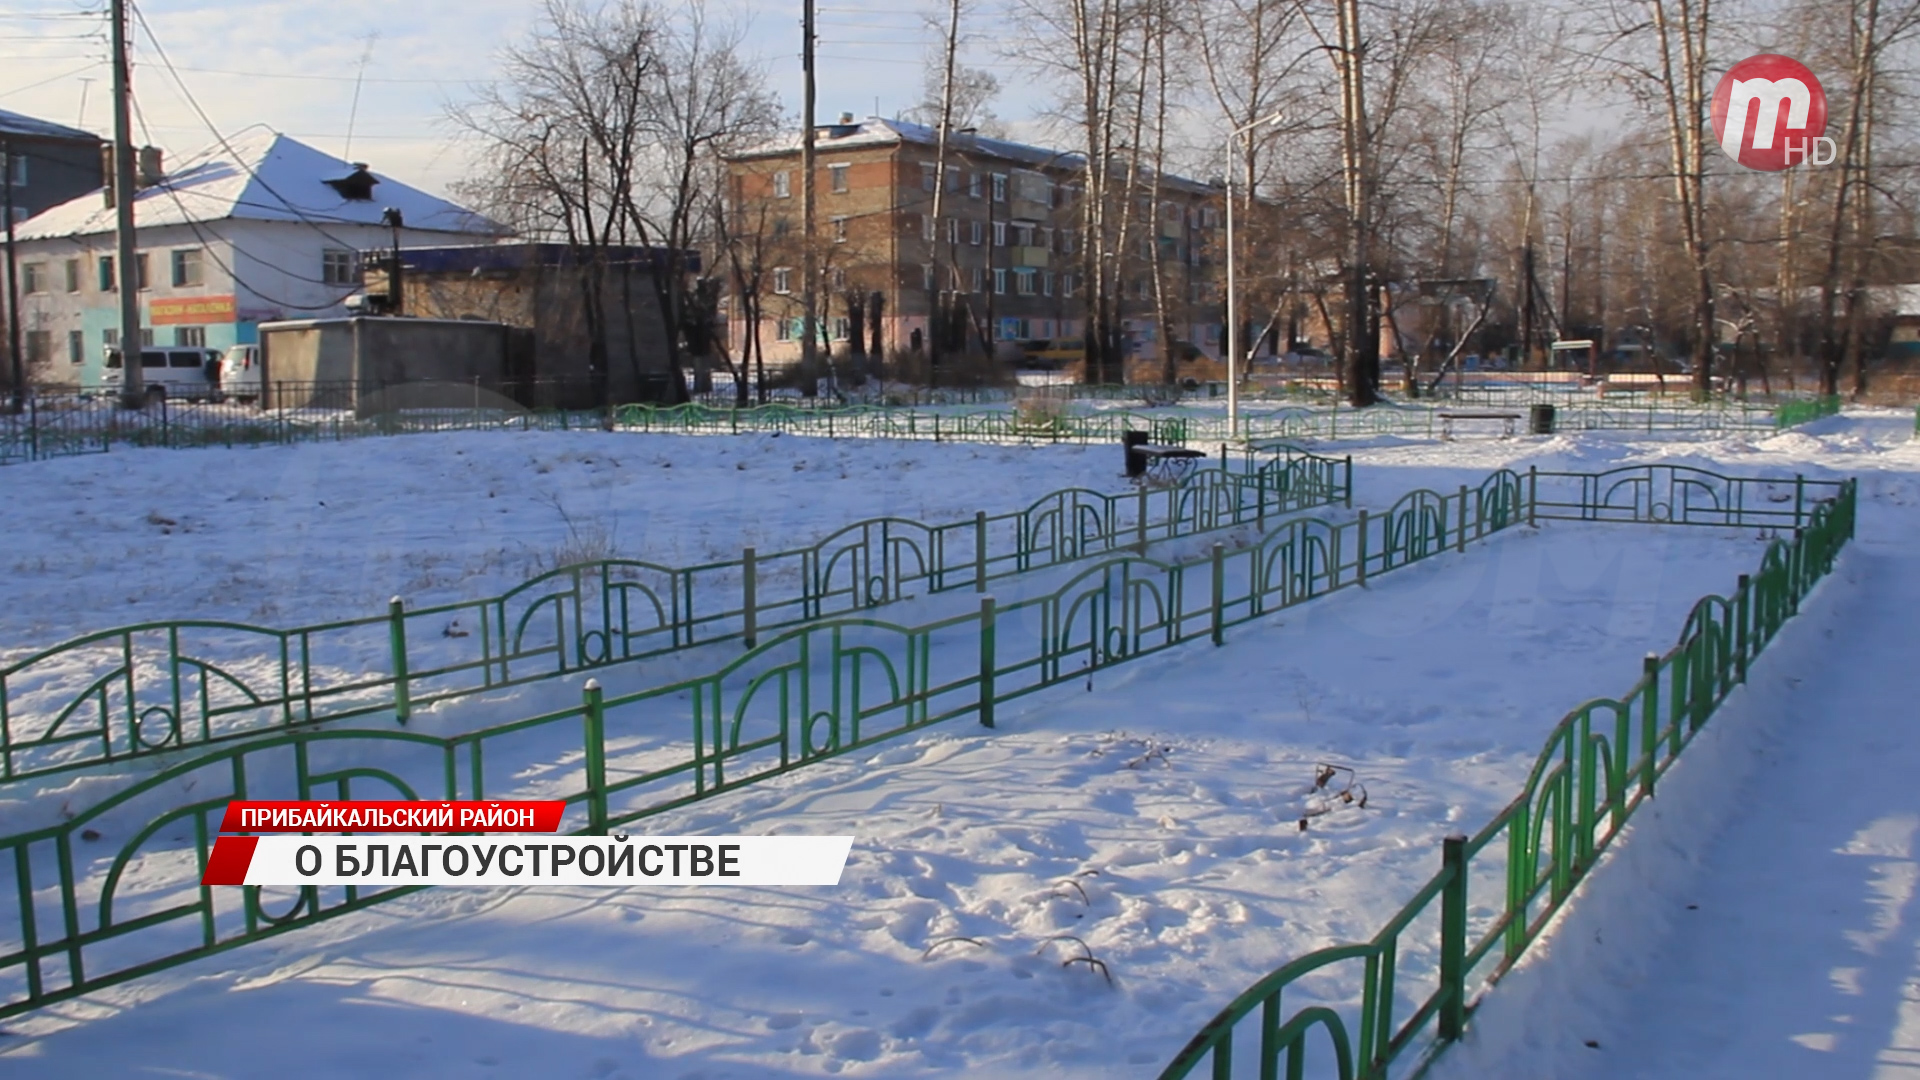 В Прибайкальском районе продолжают благоустраивать детские площадки, скверы и аллеи